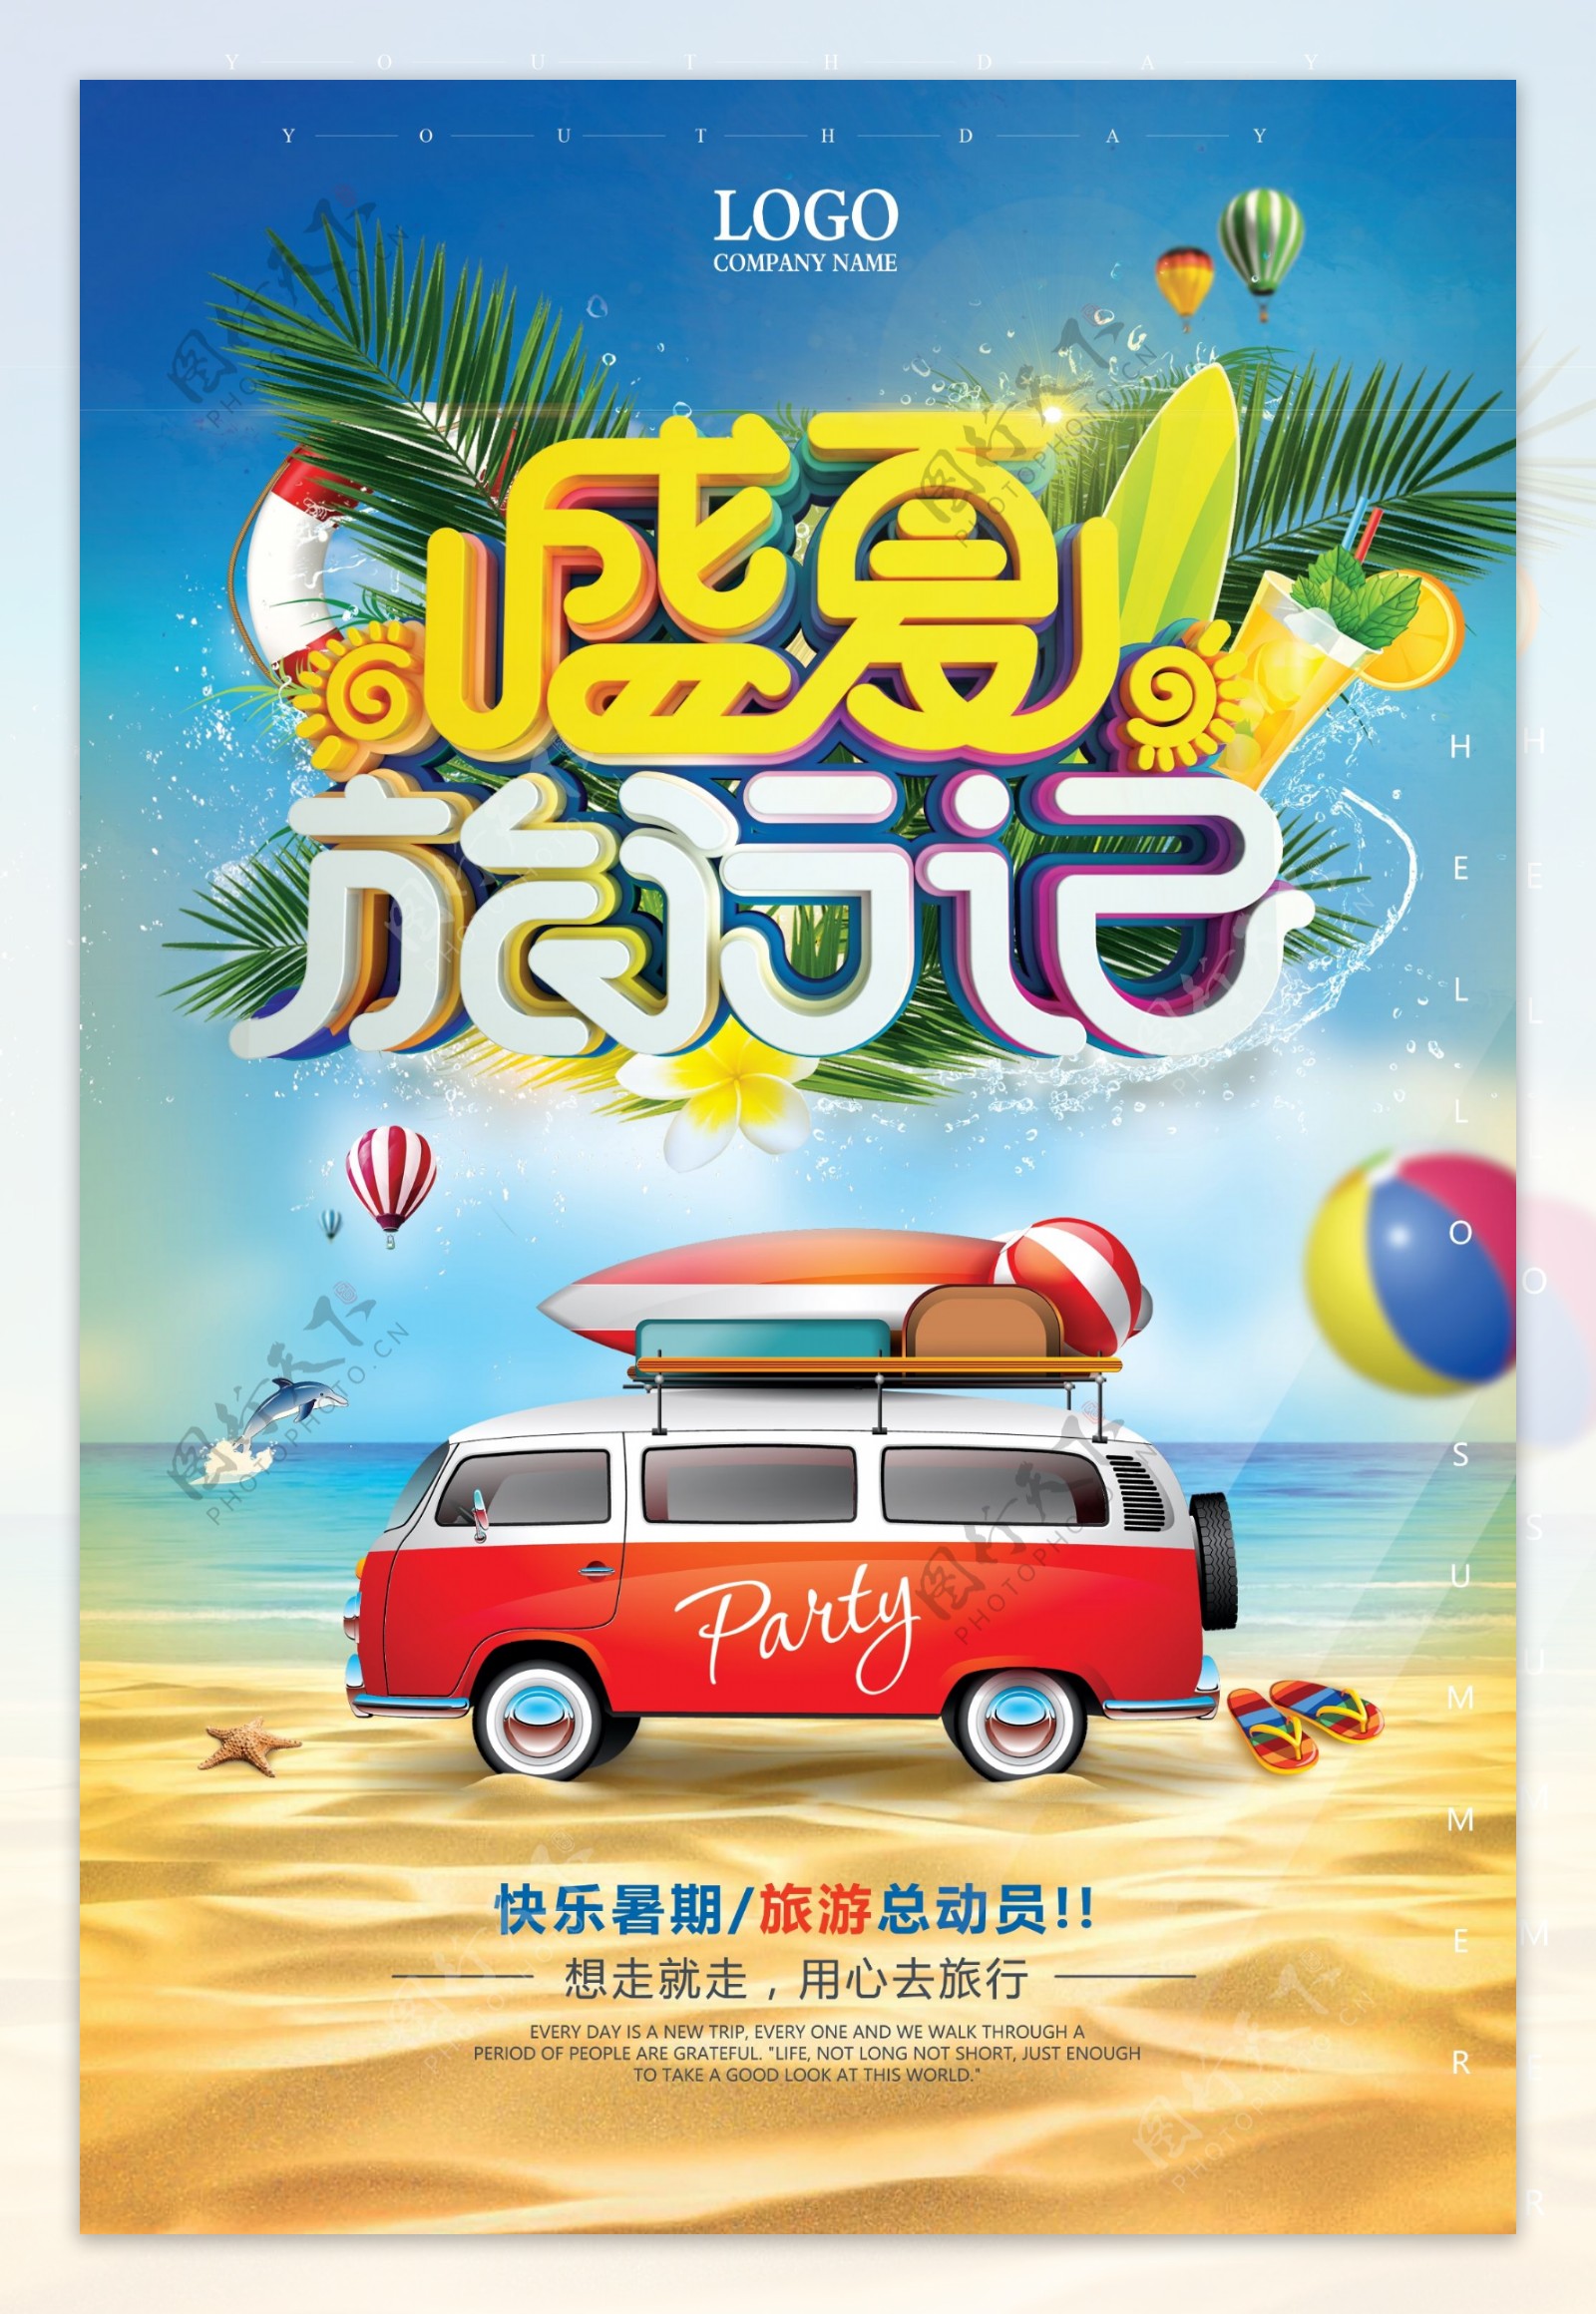 蓝色夏季旅游海边旅行海报